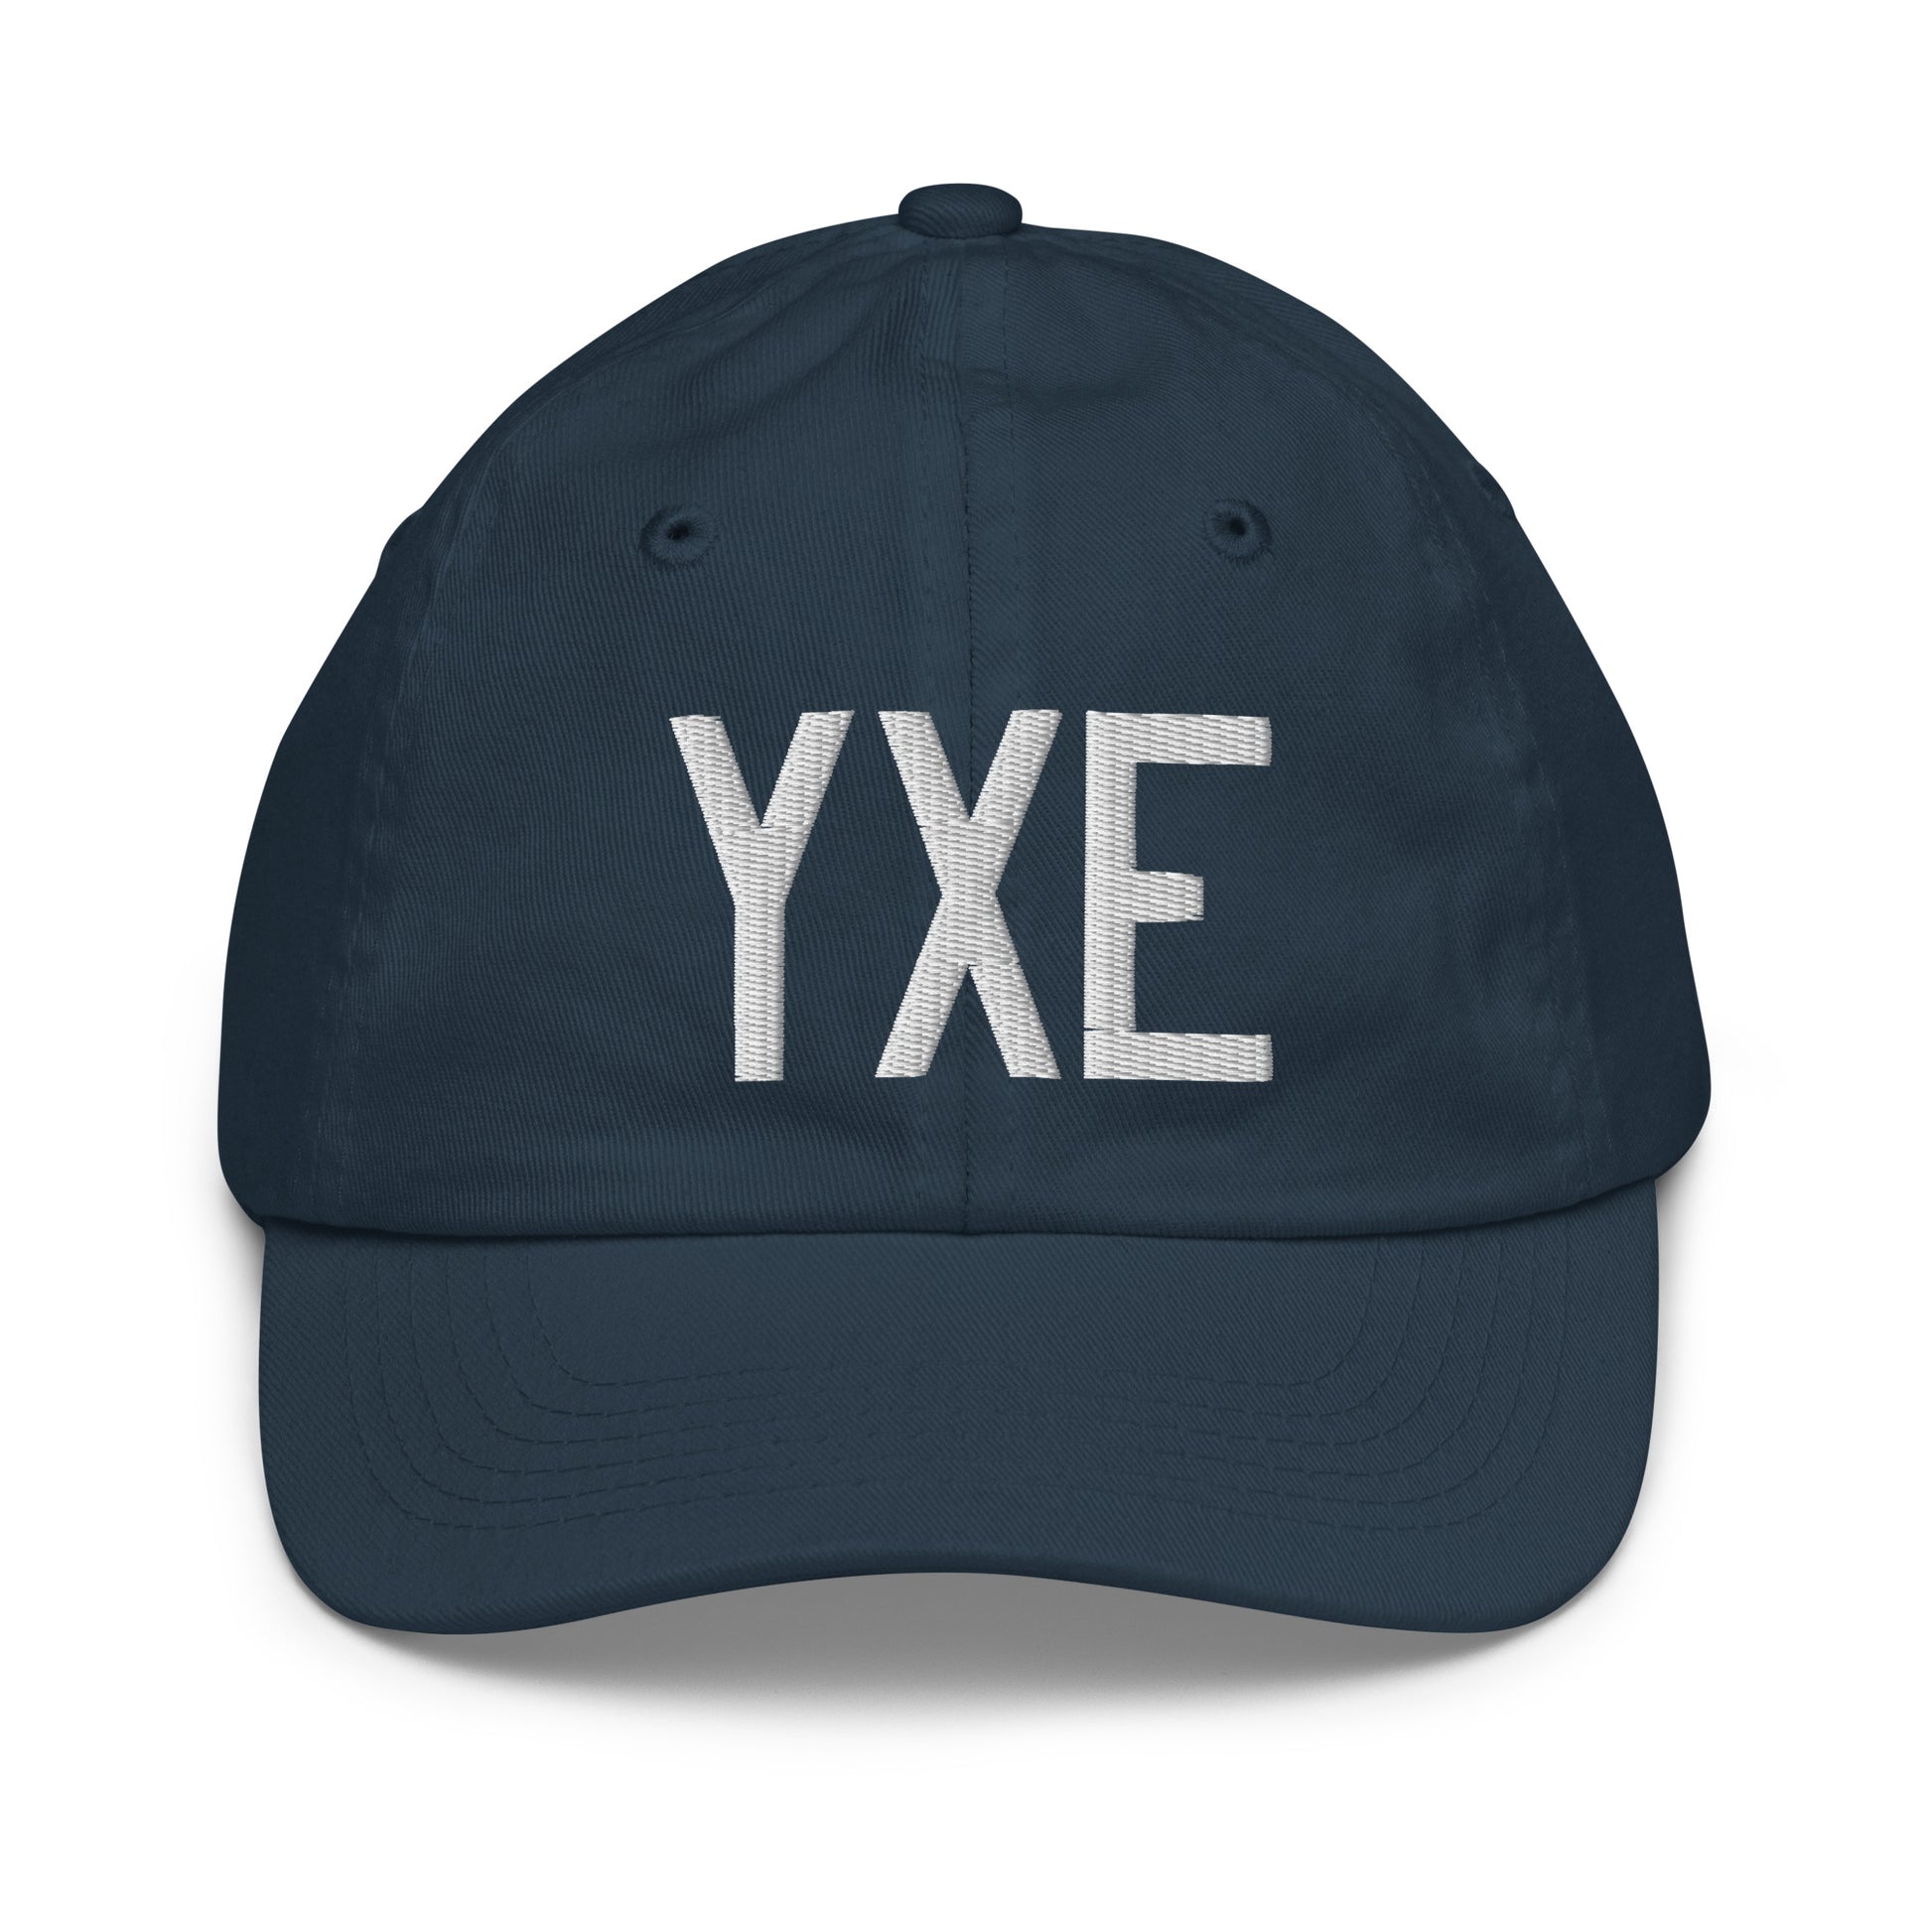 Airport Code Kid's Baseball Cap - White • YXE Saskatoon • YHM Designs - Image 14